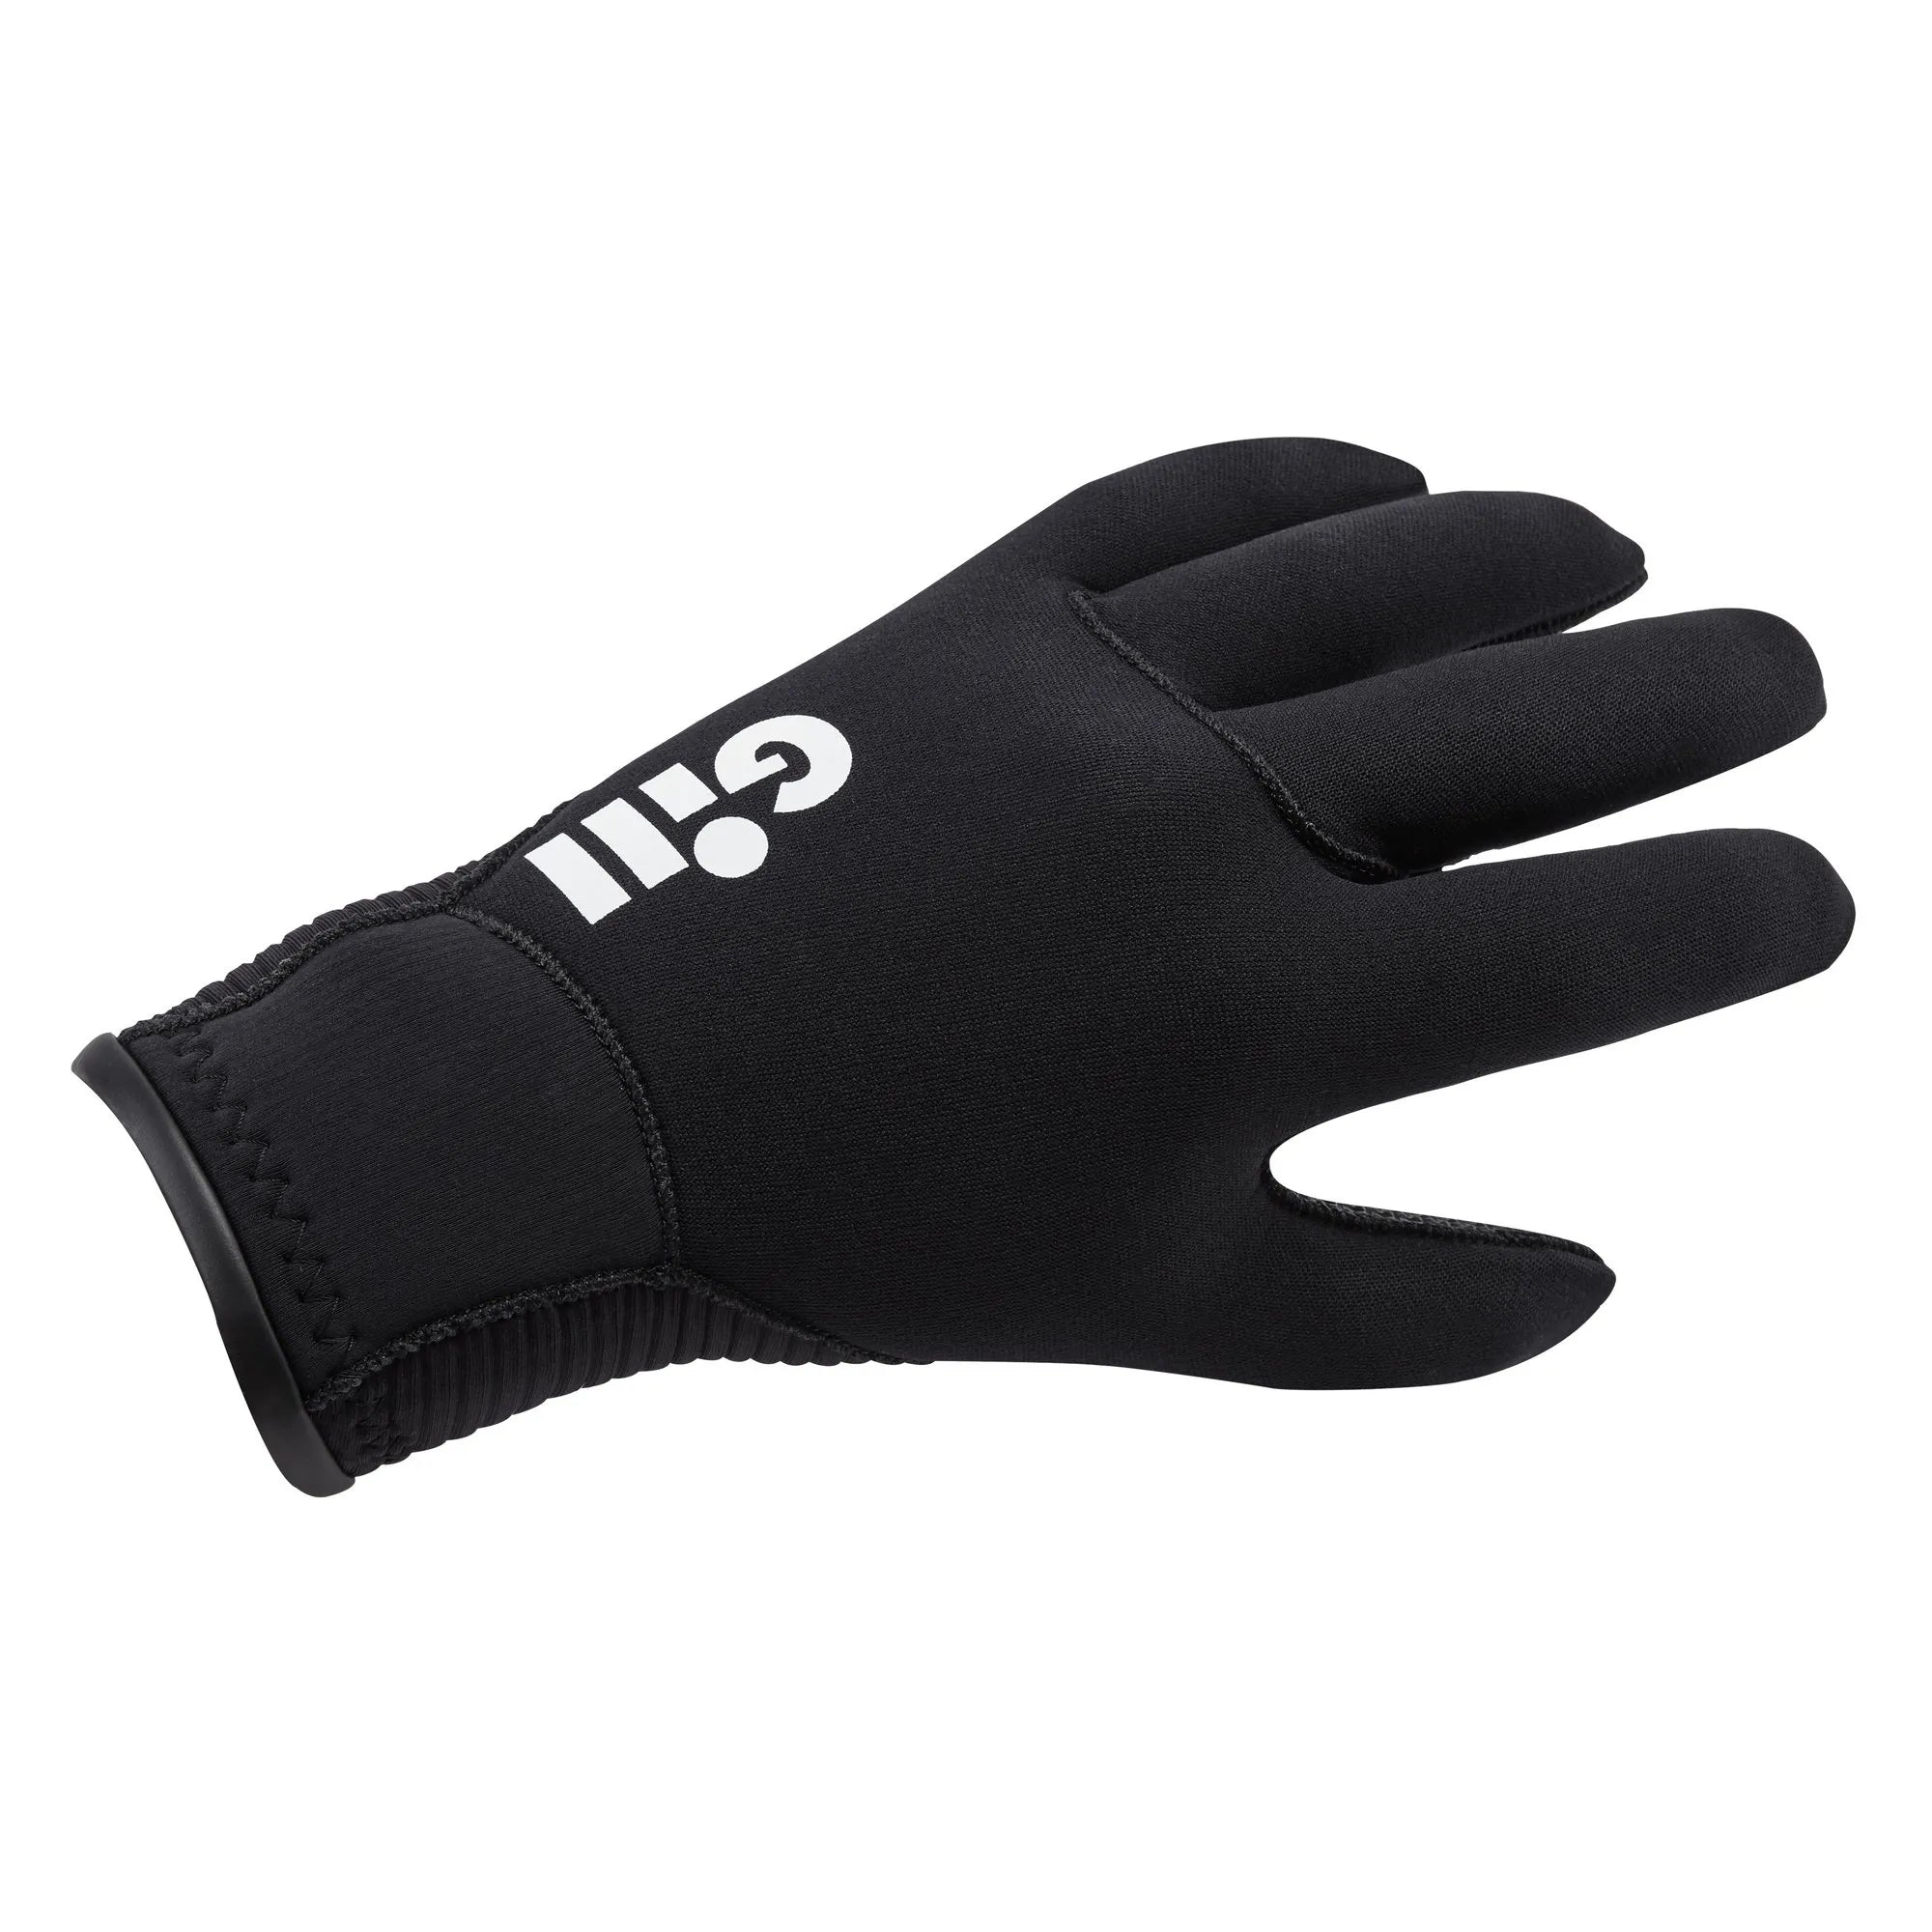 Neoprene Winter Gloves - Black